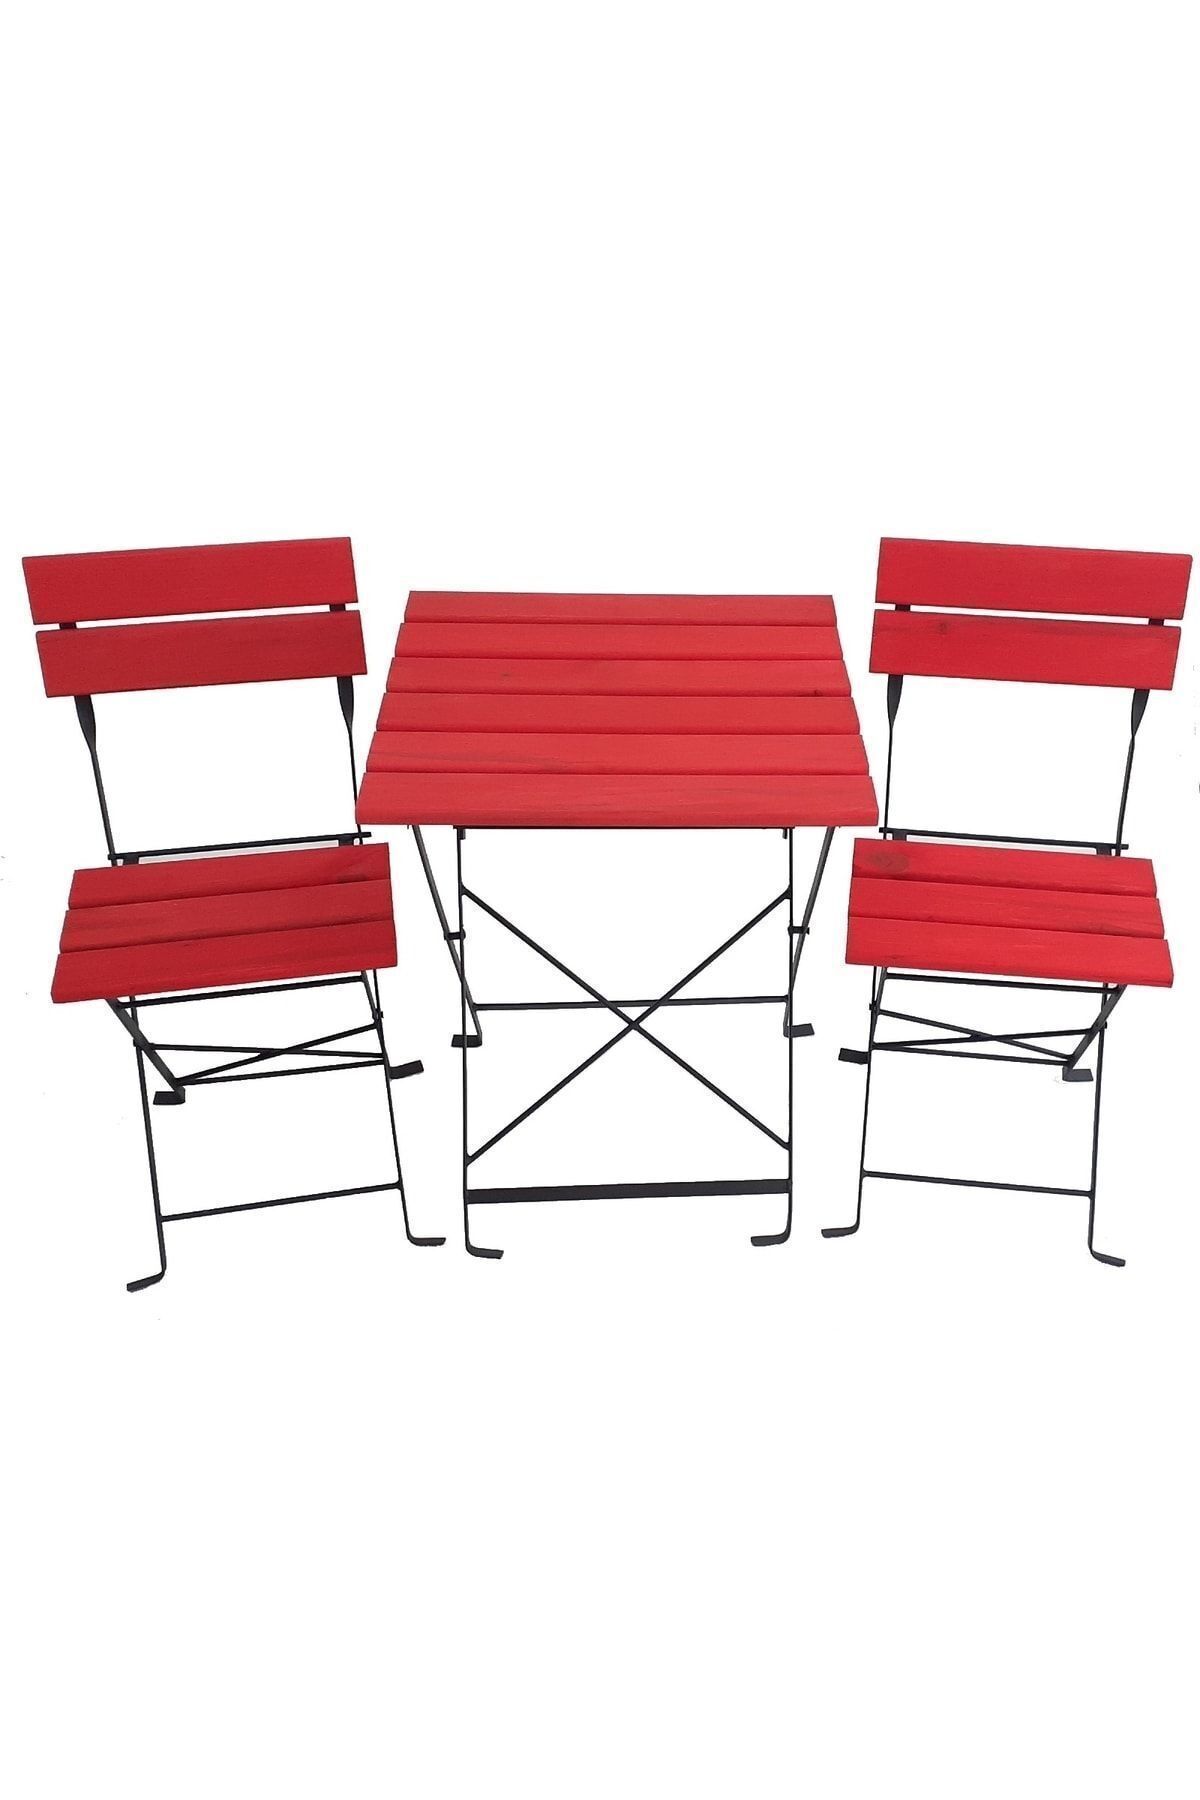 Zemes Design Kırmızı Katlanır Masa Sandalye Bahçe Balkon Mutfak Takımı 2 Sandalye 1 Masa Ikea Tipi Bistro Takım